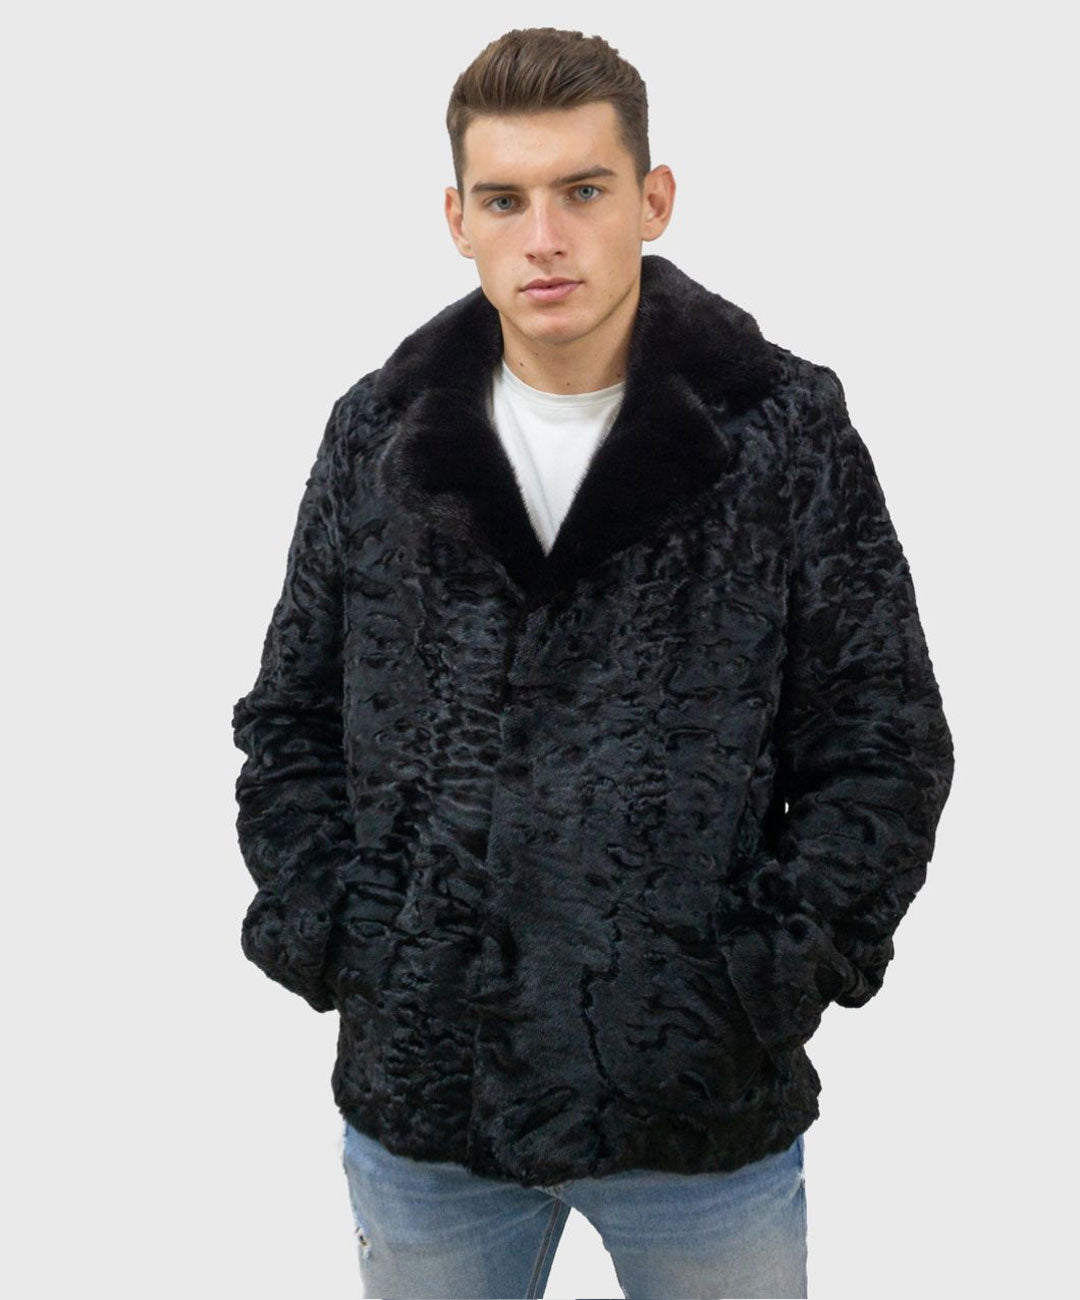 Men's Black Astrakhan Fur Jacket with Mink Fur Collar